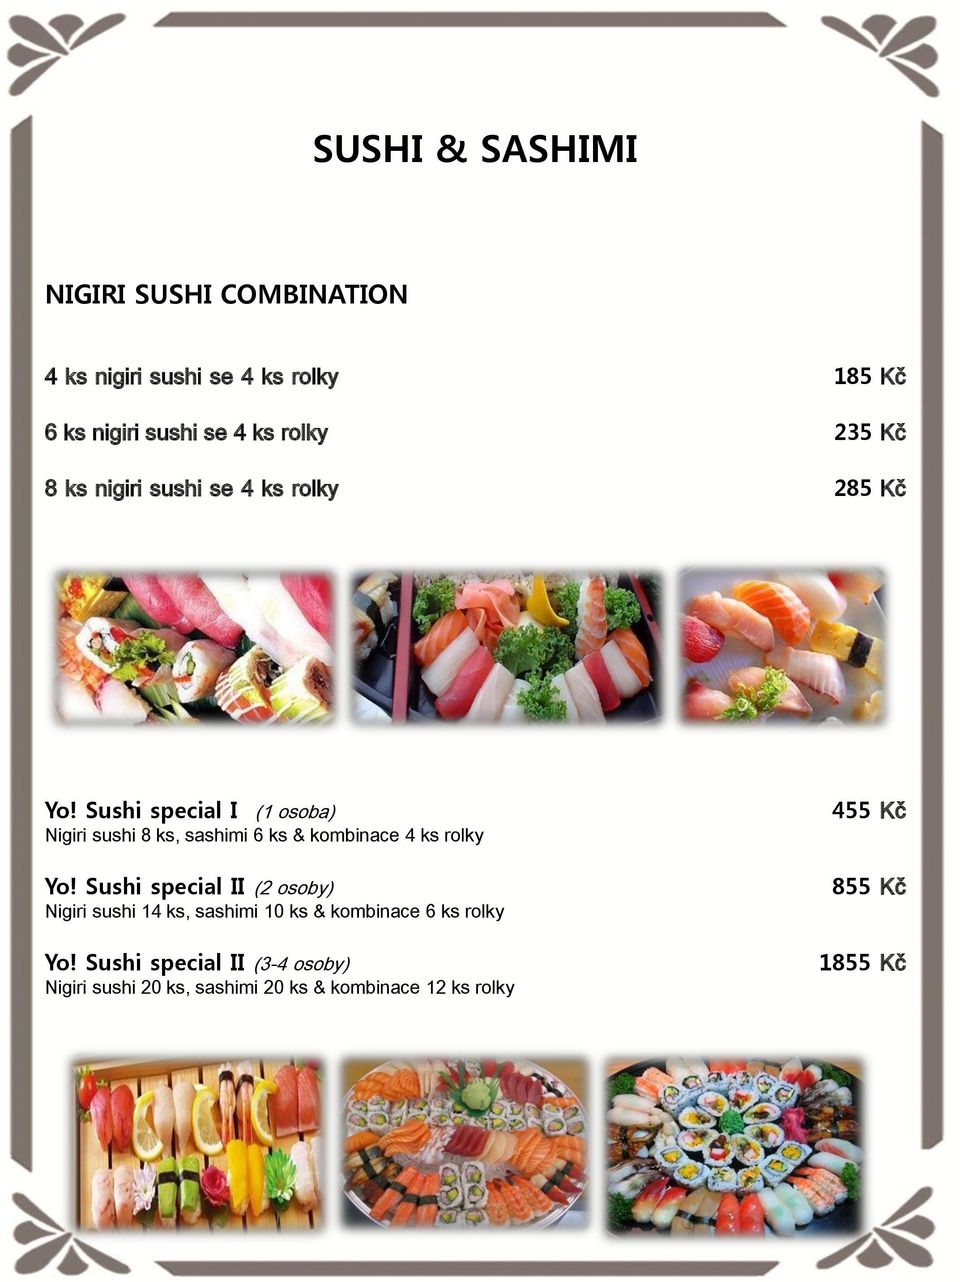 Sushi special I (1 osoba) Nigiri sushi 8 ks, sashimi 6 ks & kombinace 4 ks rolky Yo!